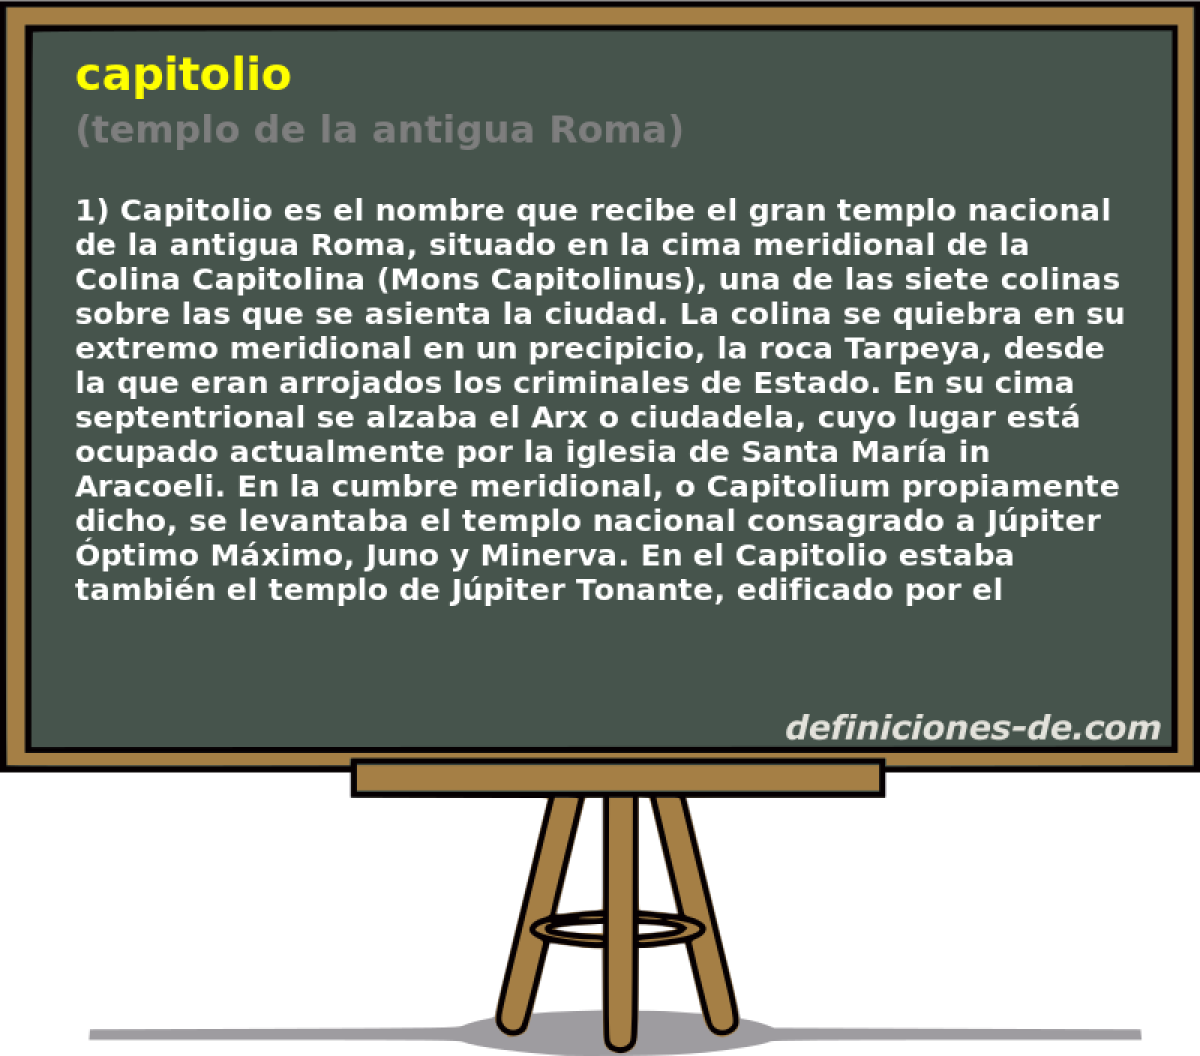 capitolio (templo de la antigua Roma)